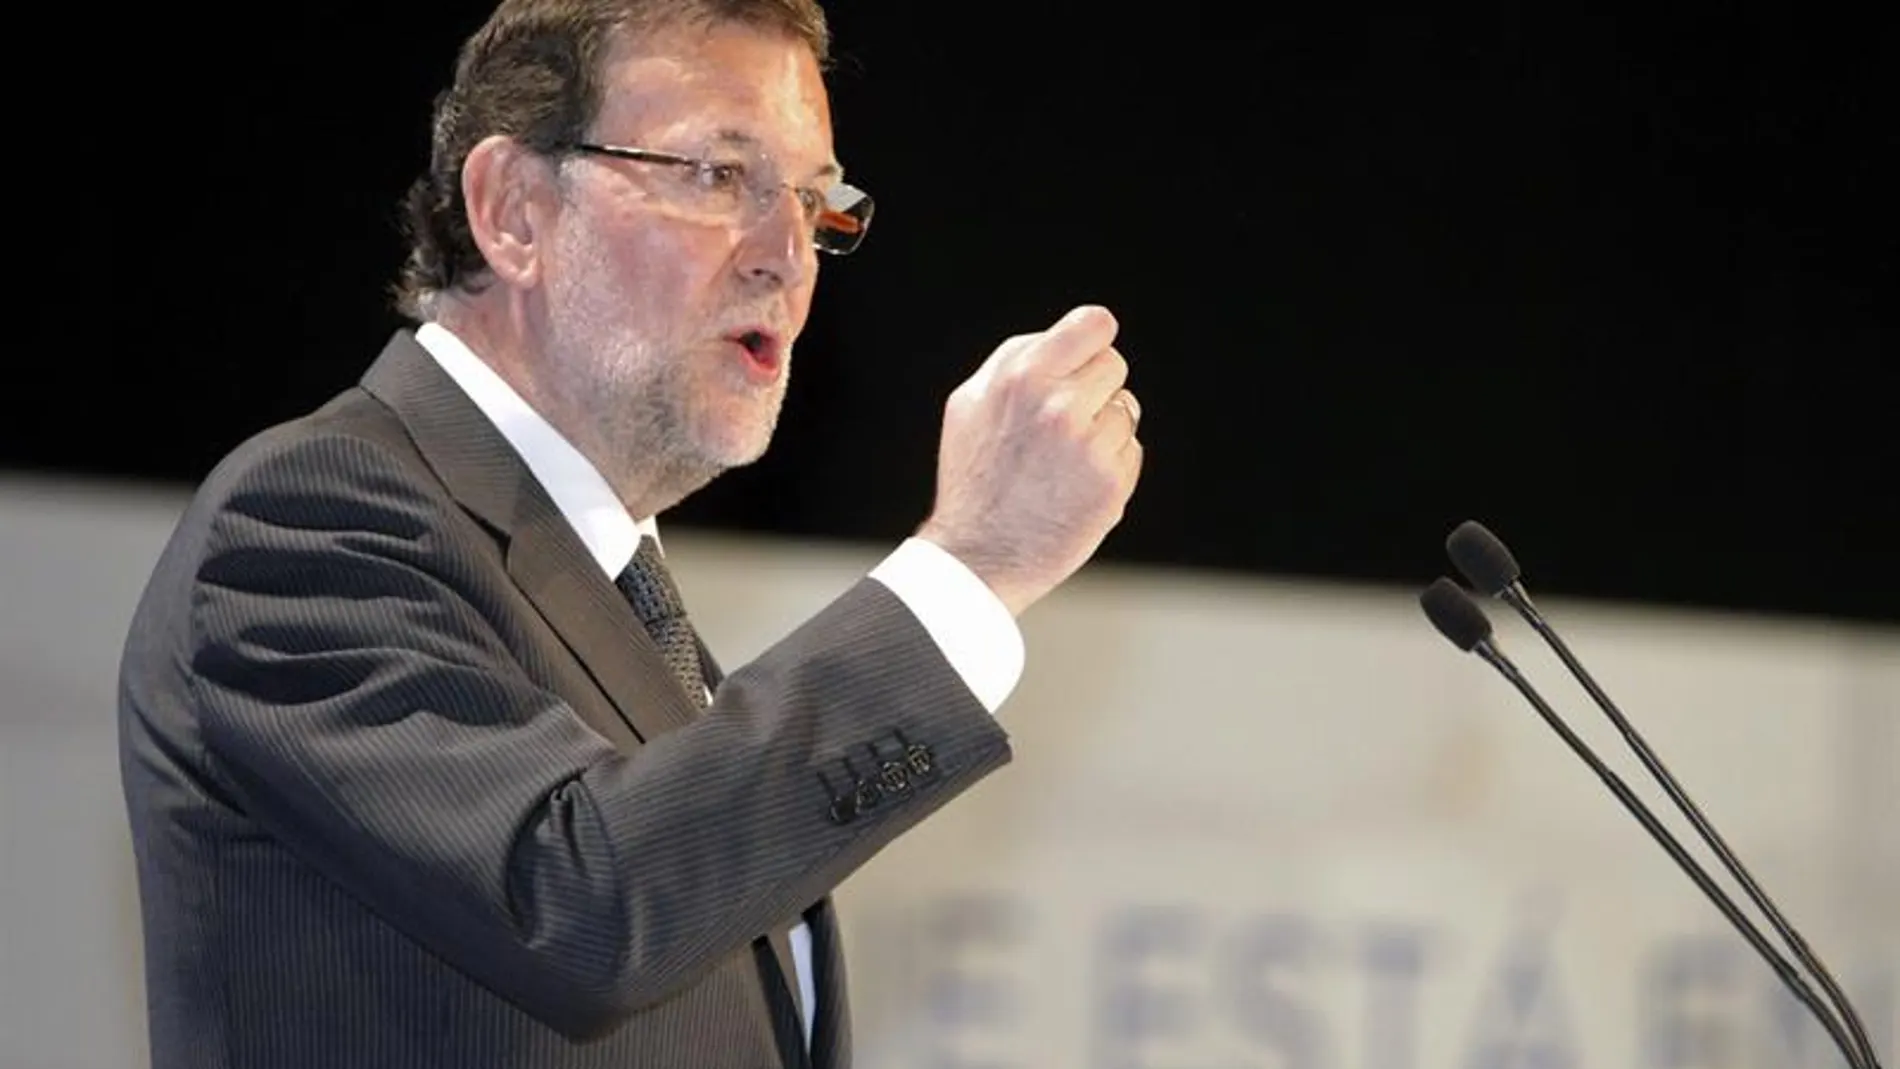 Mariano Rajoy, en un acto de campaña para las europeas